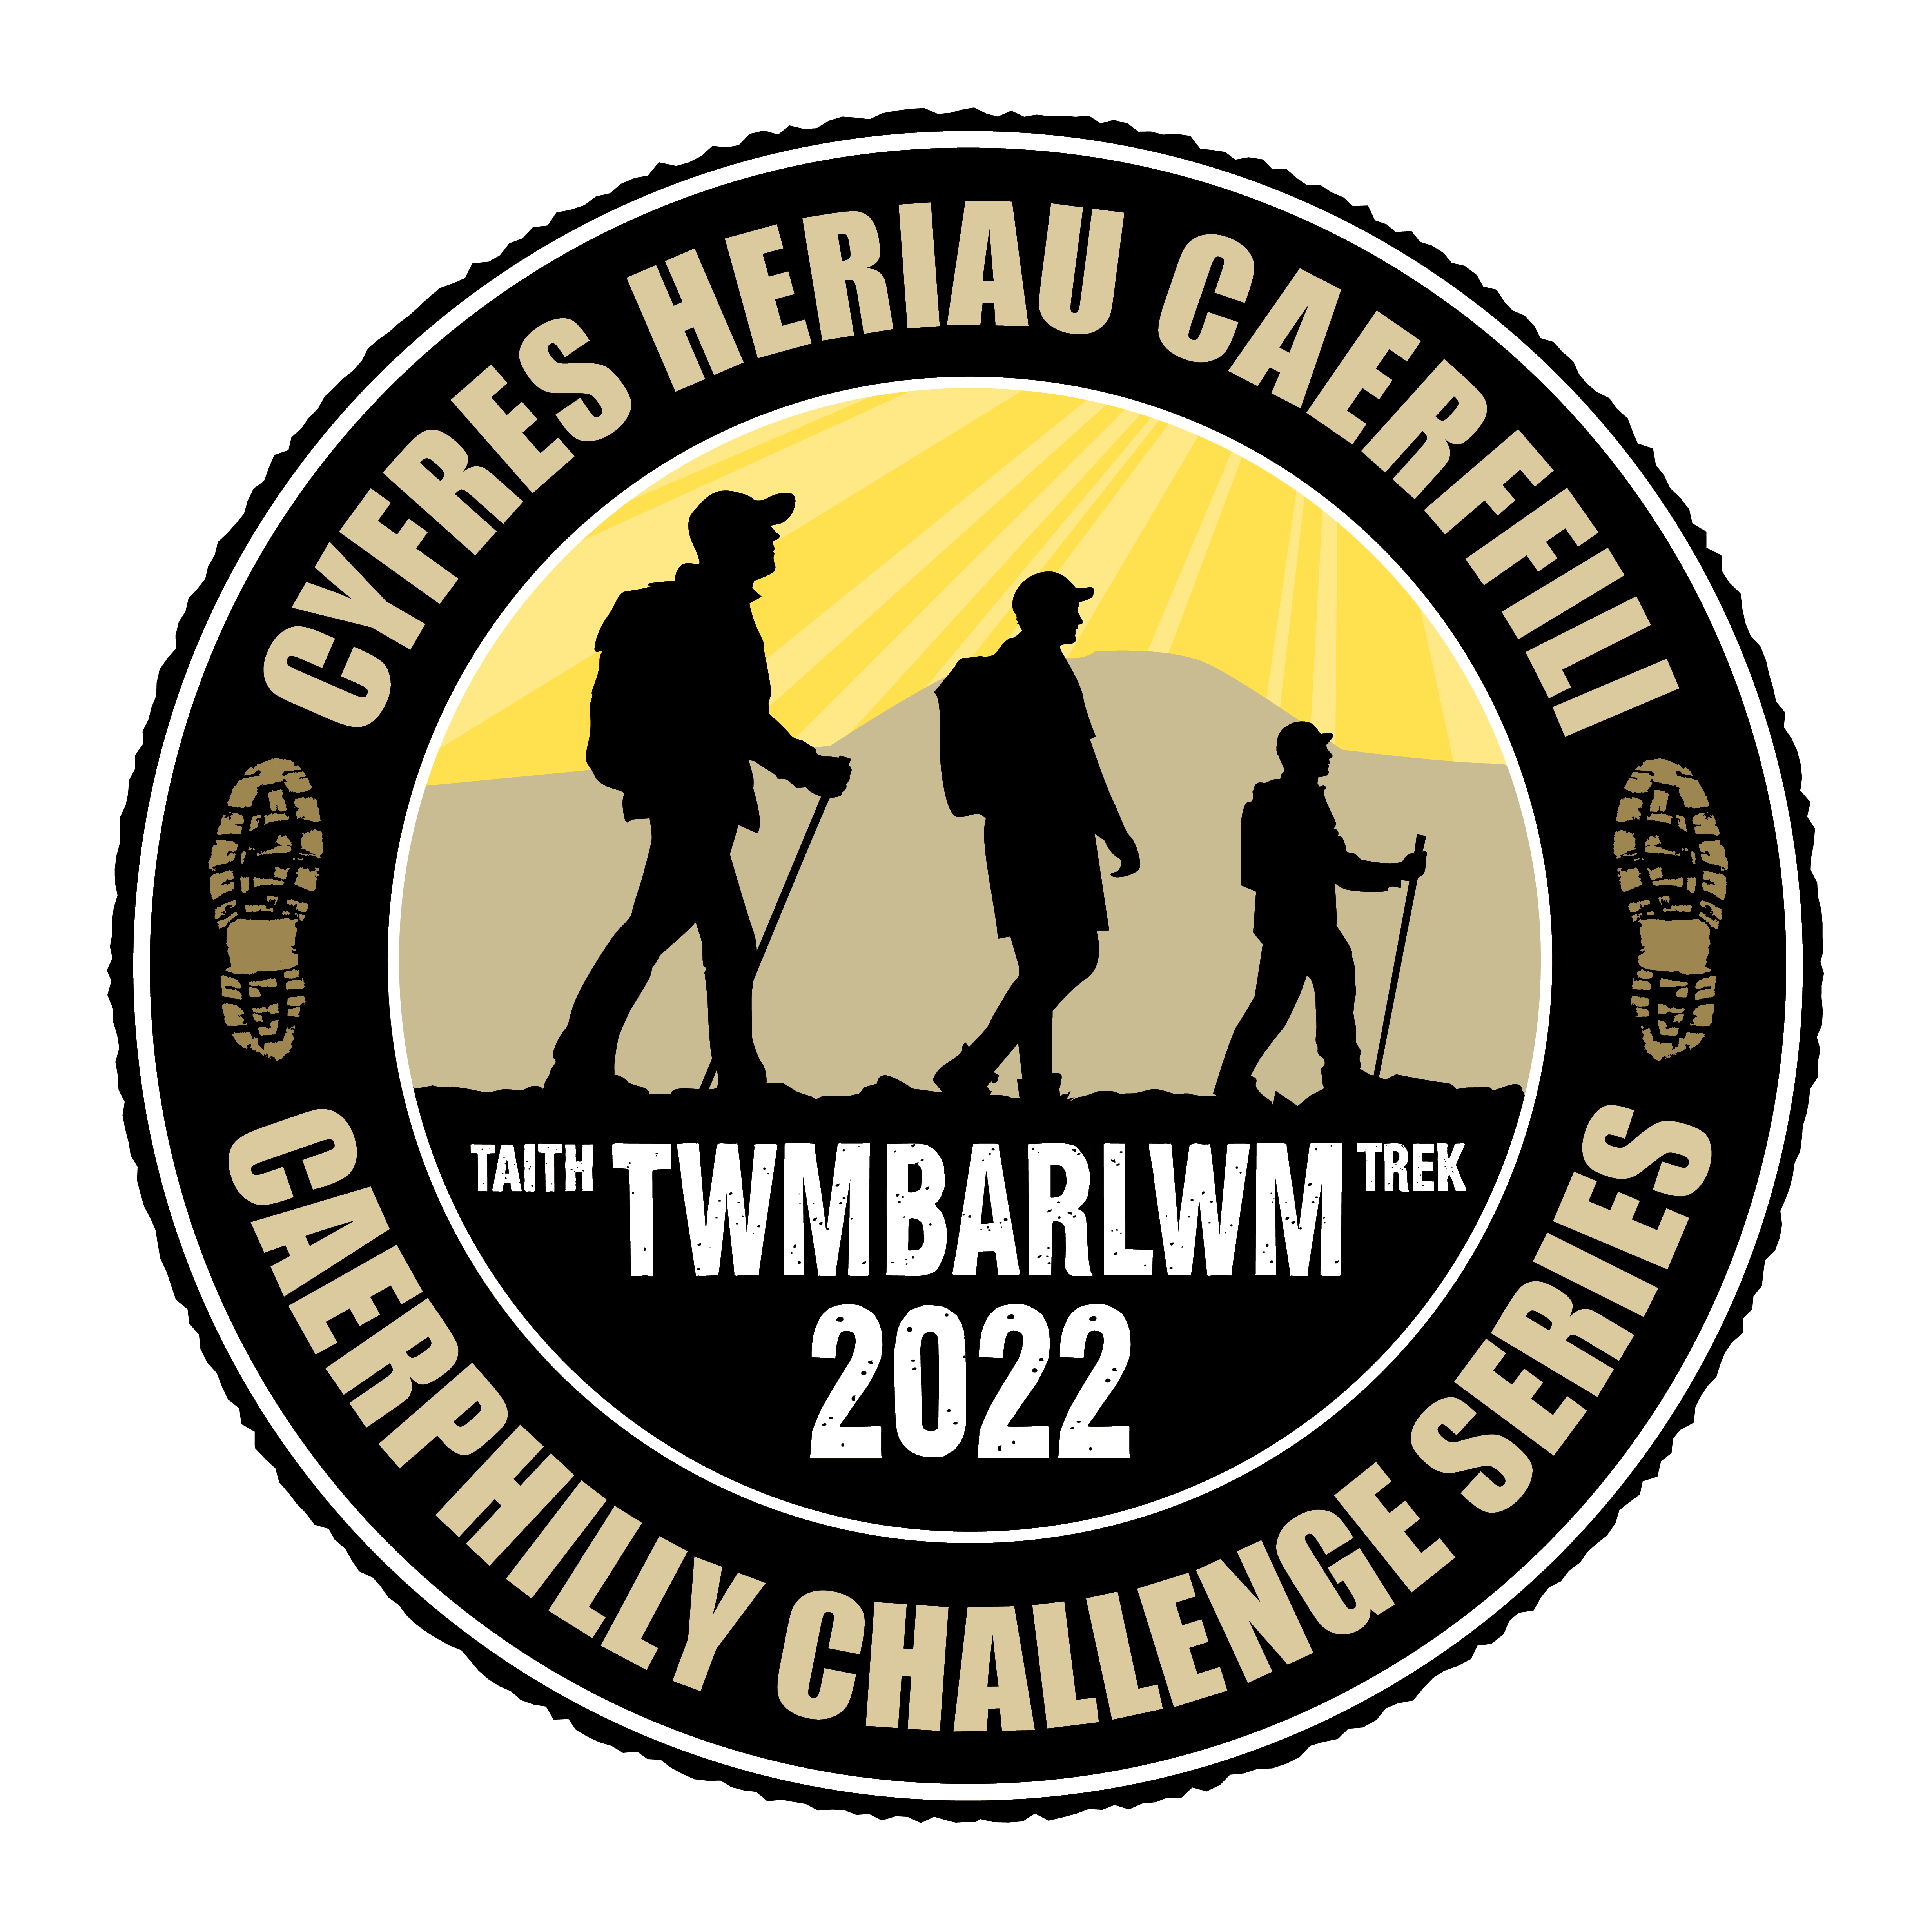 Caerphilly Challenge Series